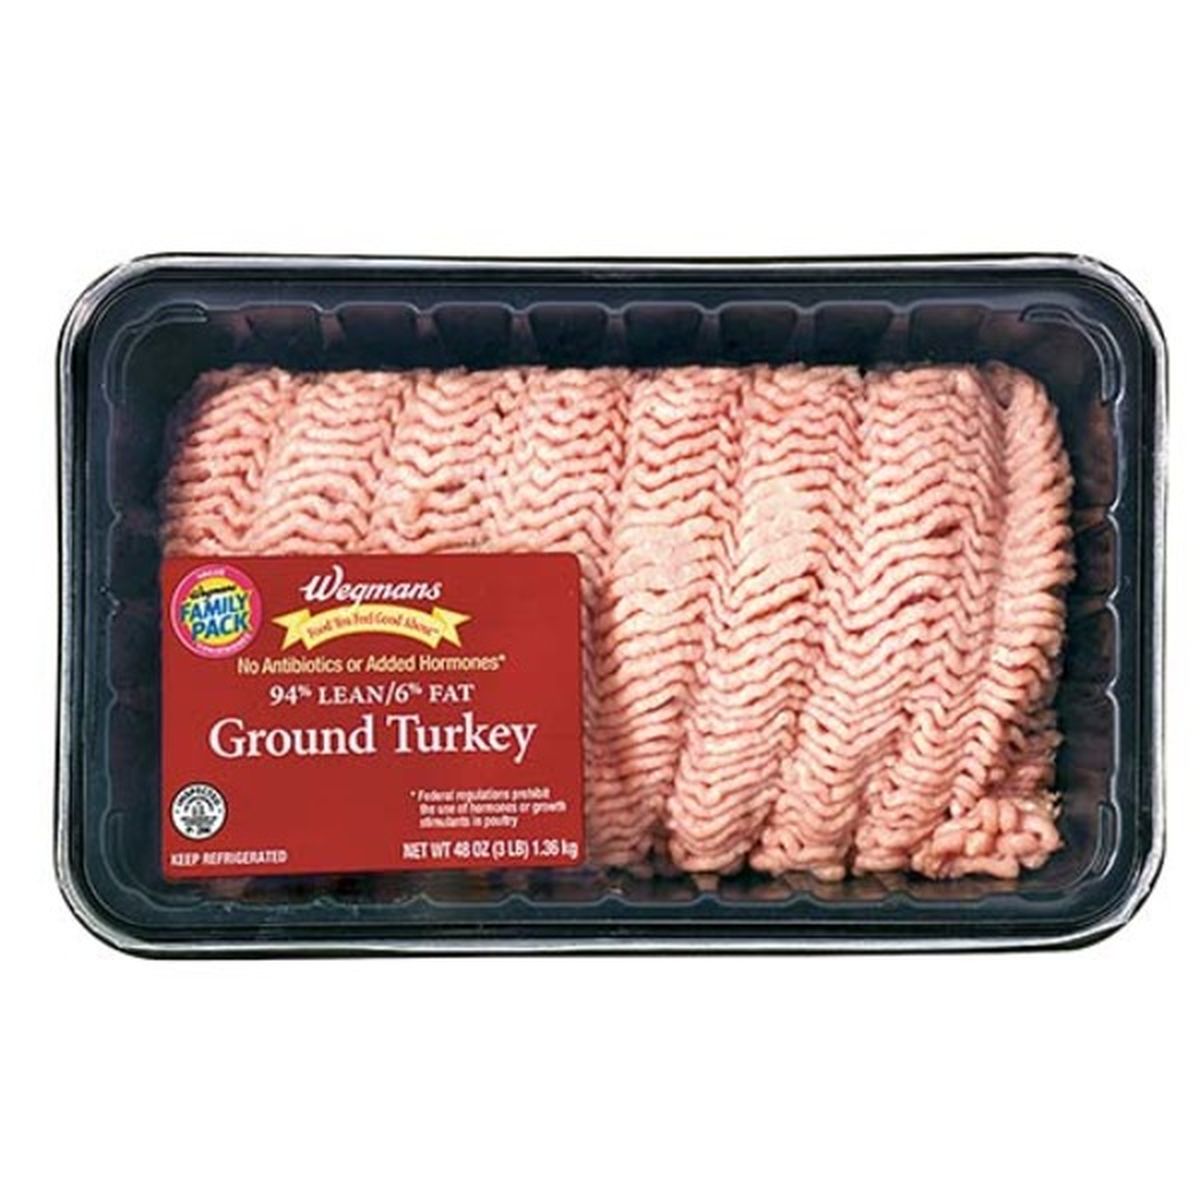 Calories in Wegmans Ground Turkey